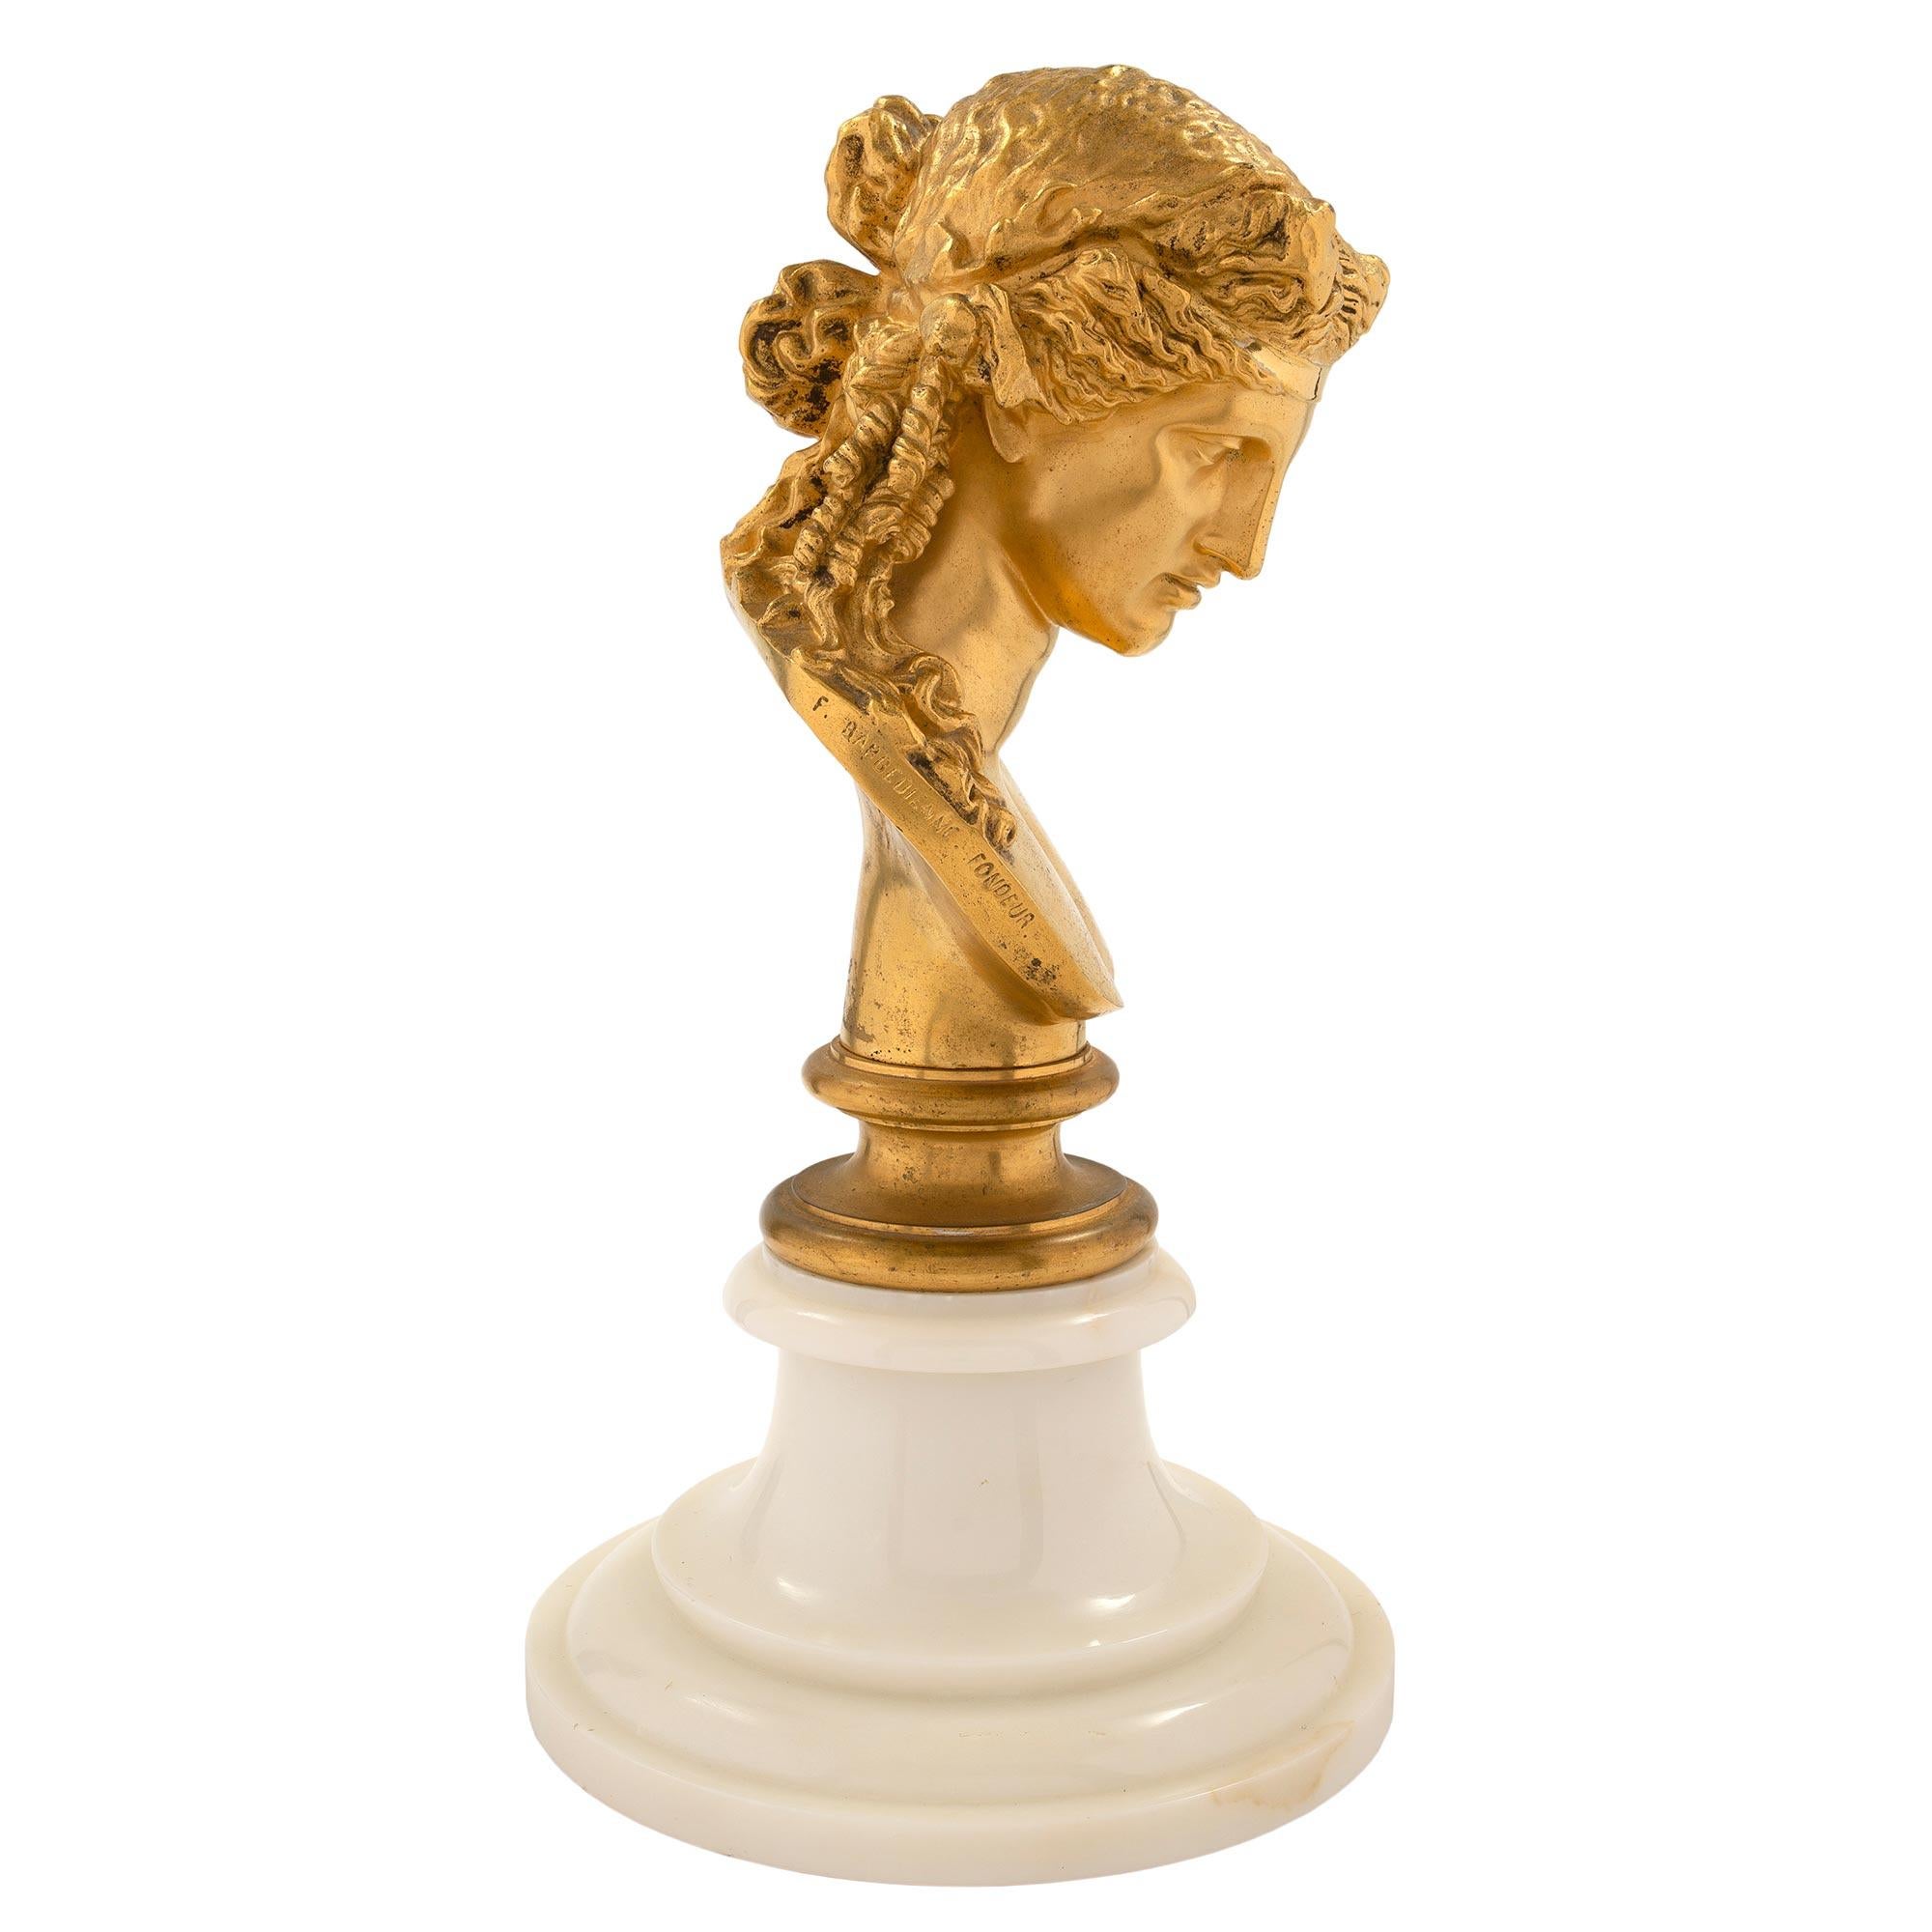 Eine elegante und hochwertige französische Venusbüste aus dem 19. Jahrhundert aus Louis XVI Ormolu, signiert F. BARBEDIENNE FONDEUR. Die Statue wird von einem runden Sockel aus weißem Carrara-Marmor mit Stufenmuster getragen. Oben ist die fein